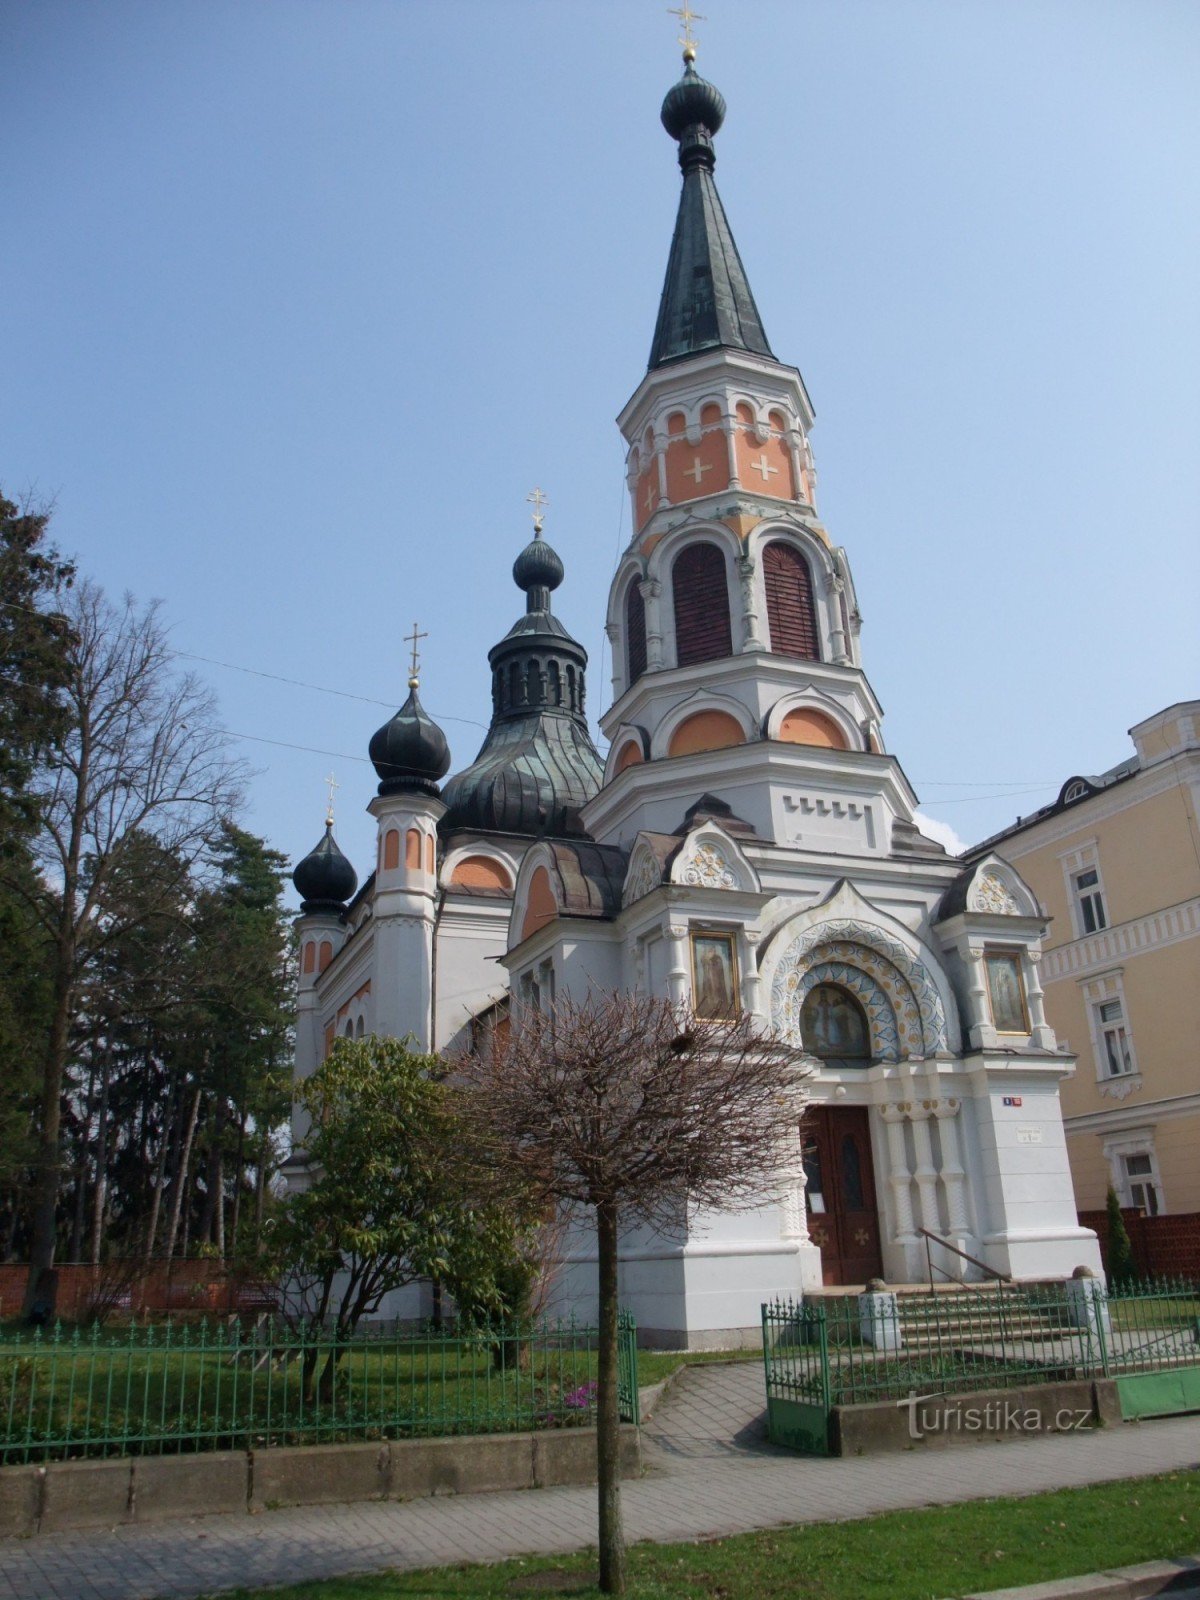 Chiesa ortodossa di S. Olga a Františkovy Lázně